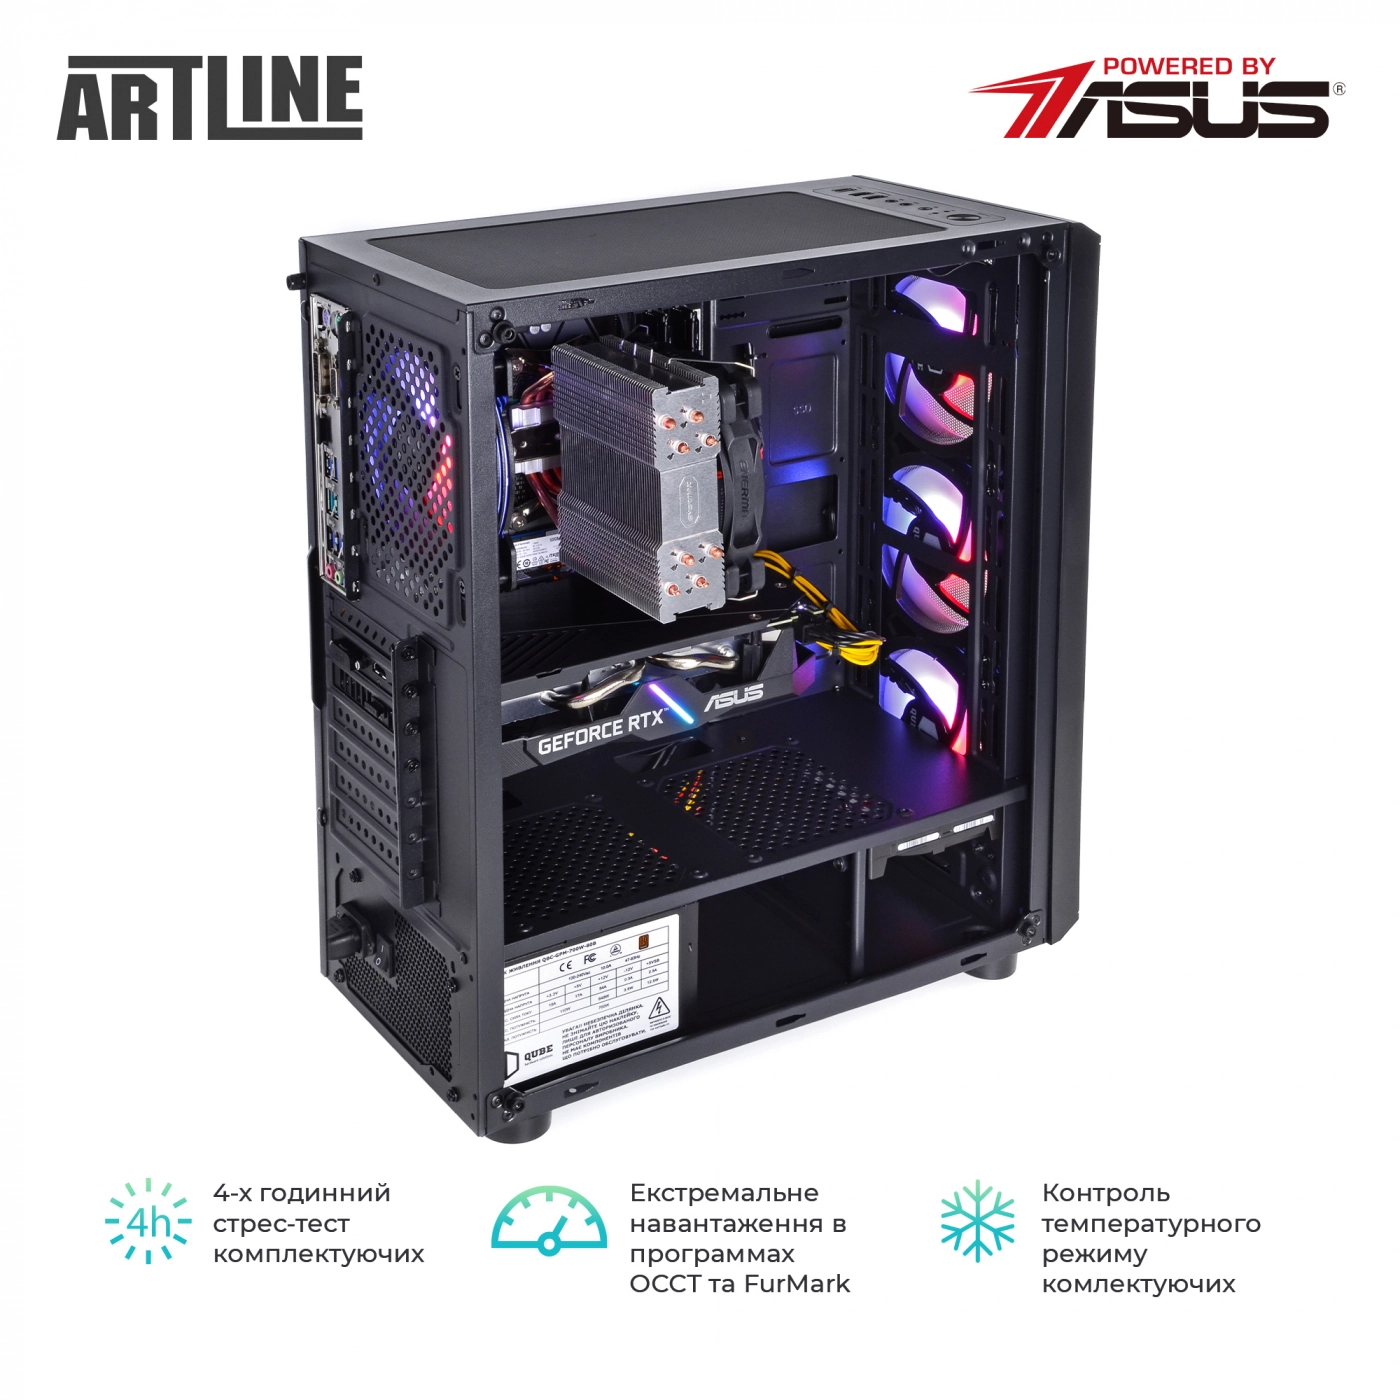 Купить Компьютер ARTLINE Gaming X66v19 - фото 9